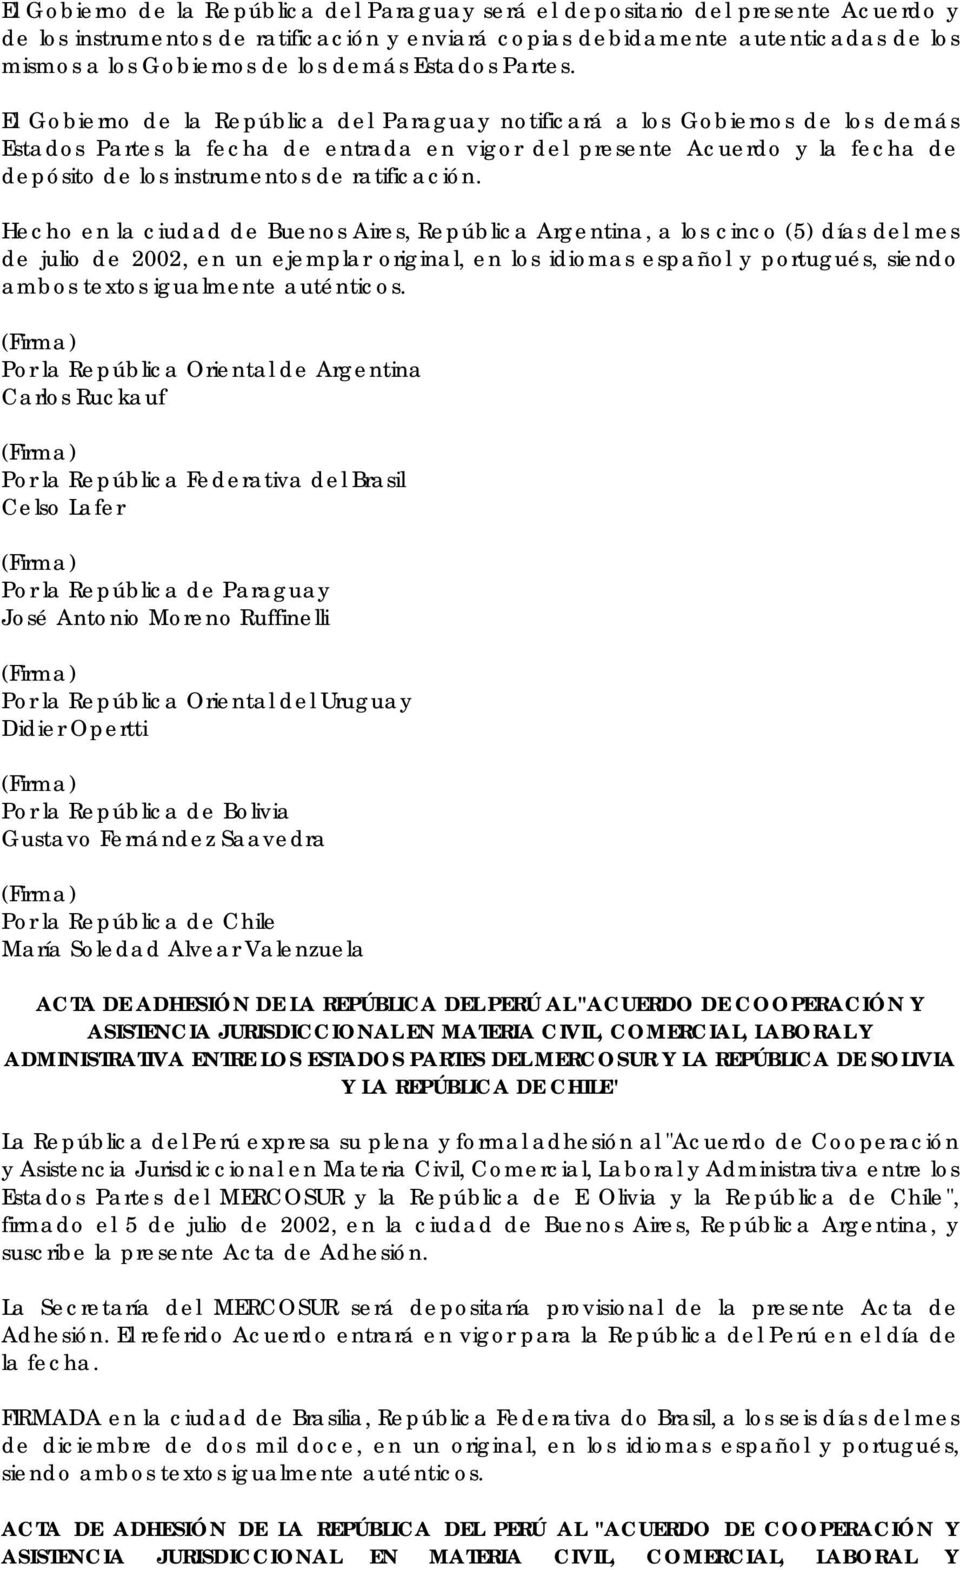 El Gobierno de la República del Paraguay notificará a los Gobiernos de los demás Estados Partes la fecha de entrada en vigor del presente Acuerdo y la fecha de depósito de los instrumentos de